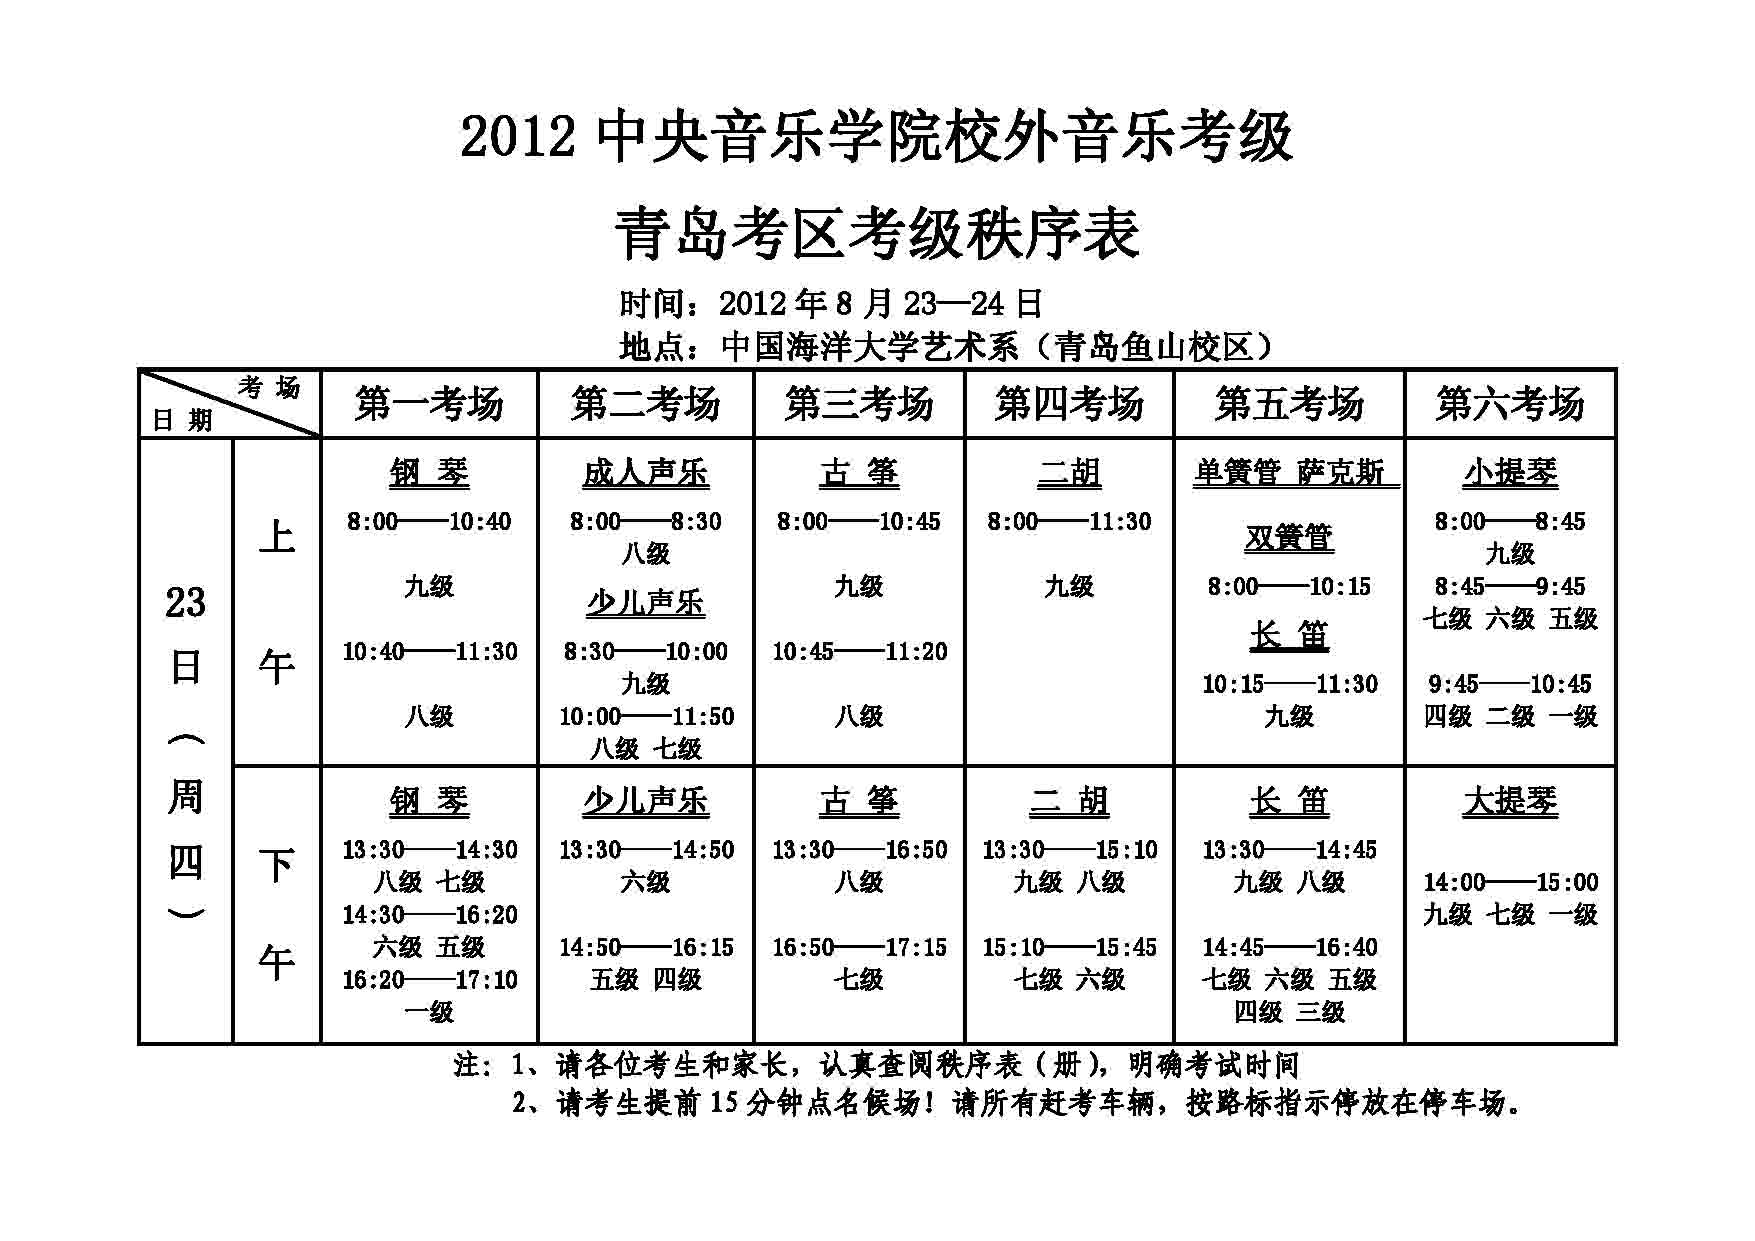 2012年中央音乐学院考级青岛考区考级秩序表